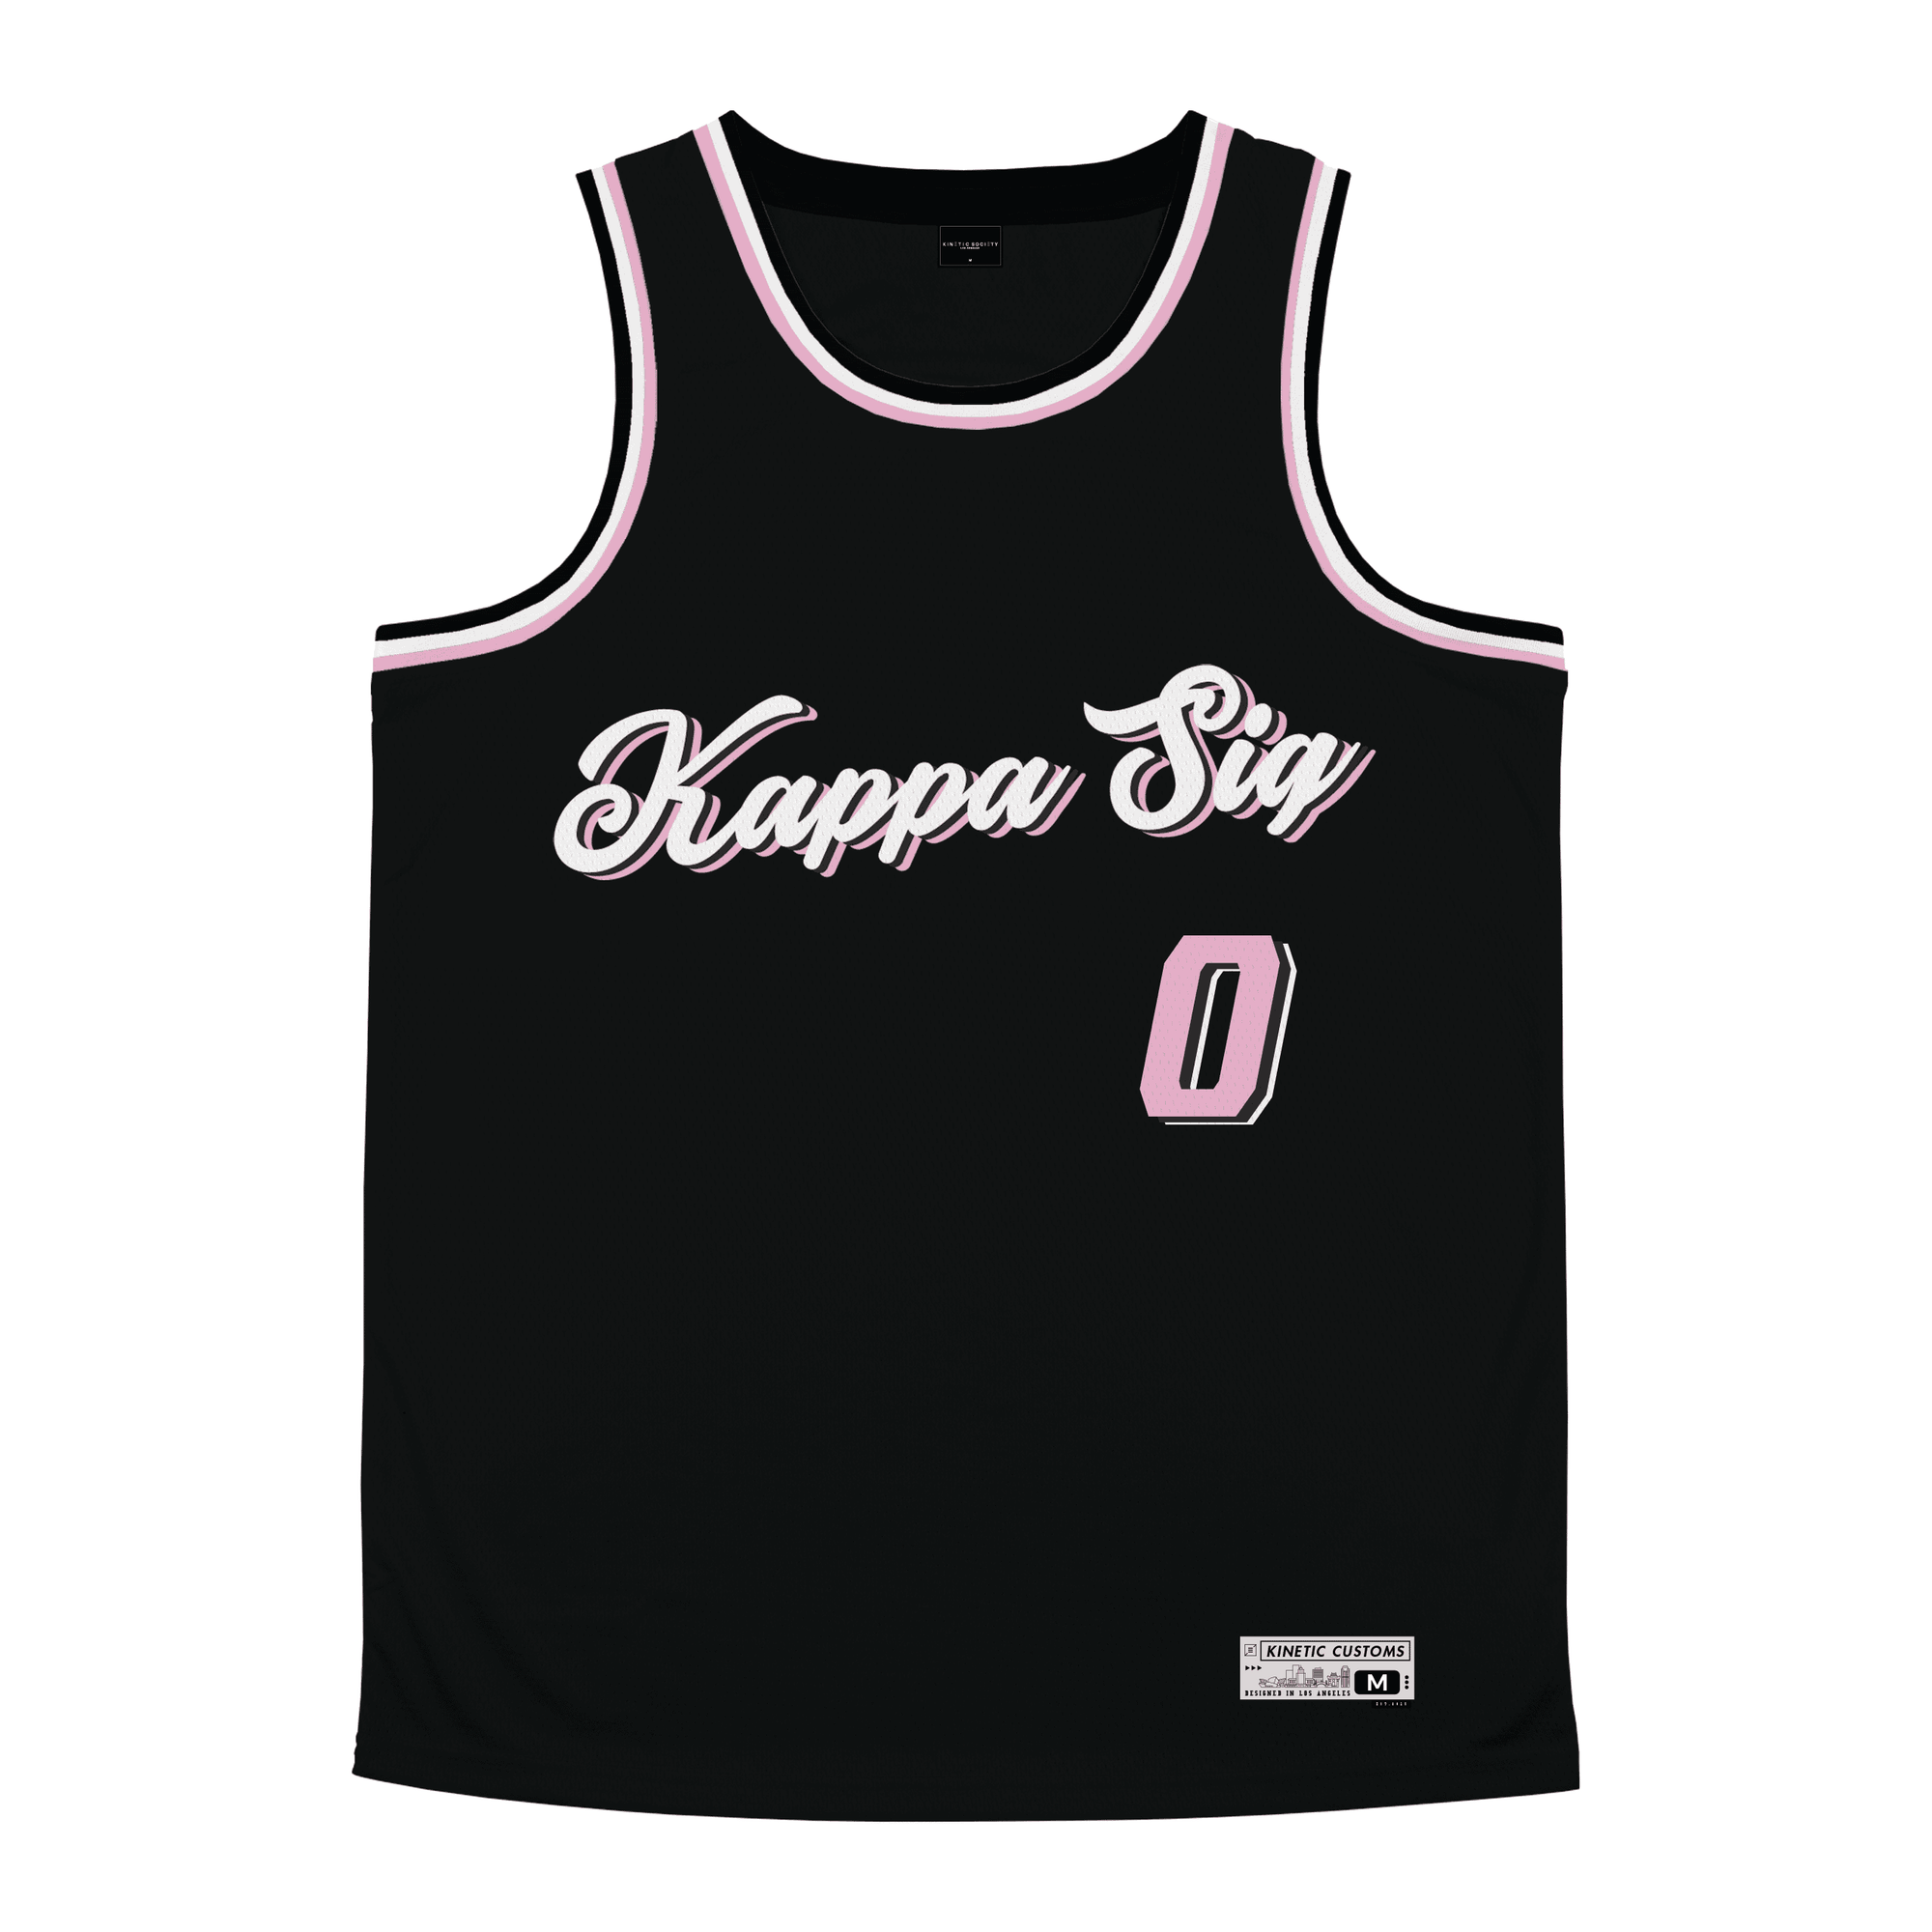 Kappa Sigma - Arctic Night  Basketball Jersey